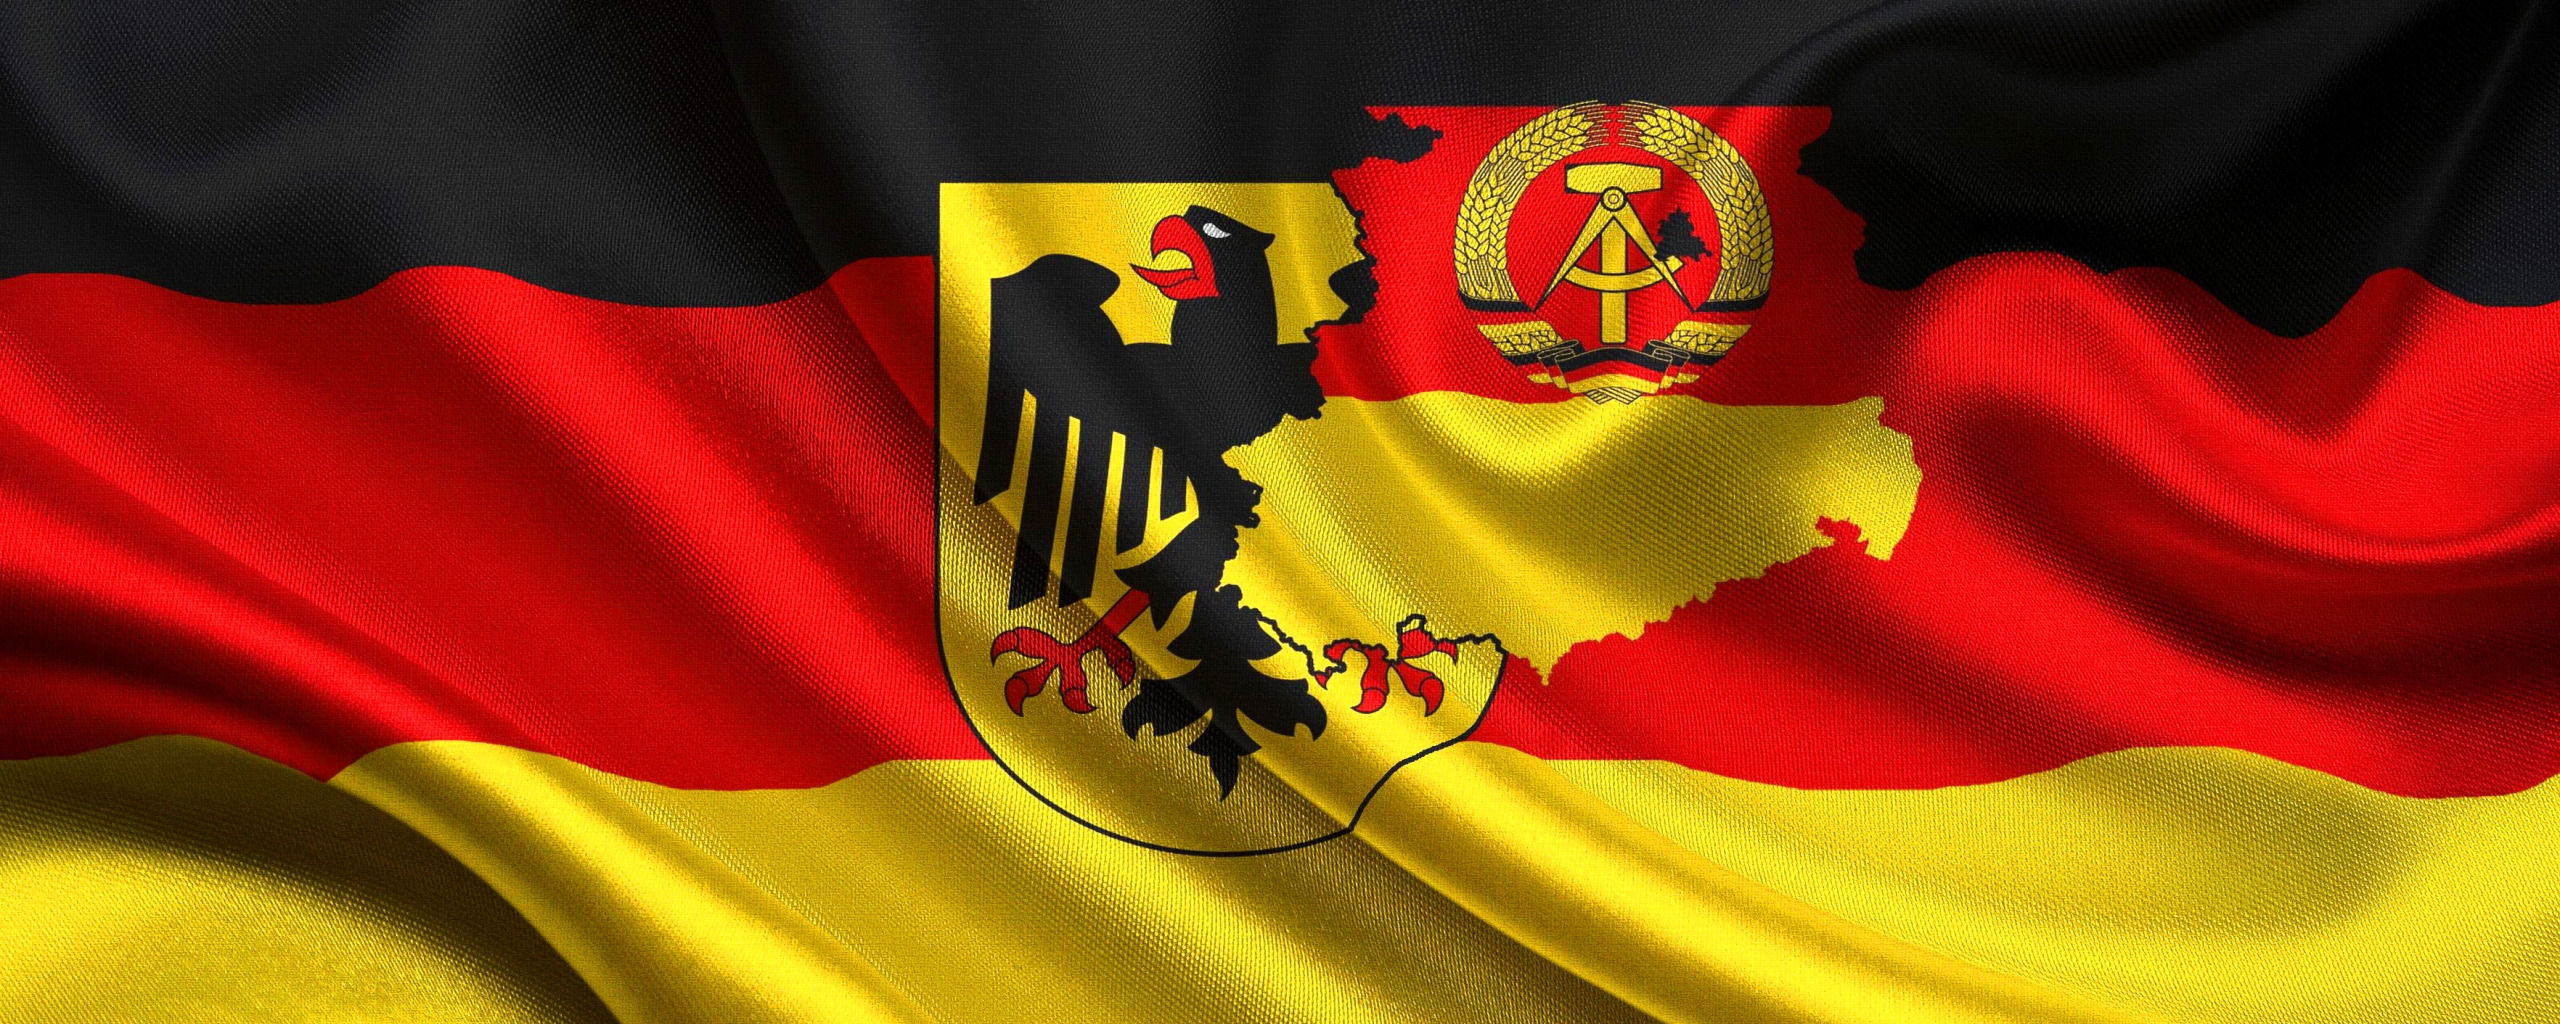 Почему было 2 германии. Флаг ГДР И флаг ФРГ. Флаг Германии ФРГ И ГДР. ФРГ И ГДР флаги и гербы. Флаг Германии 1949.